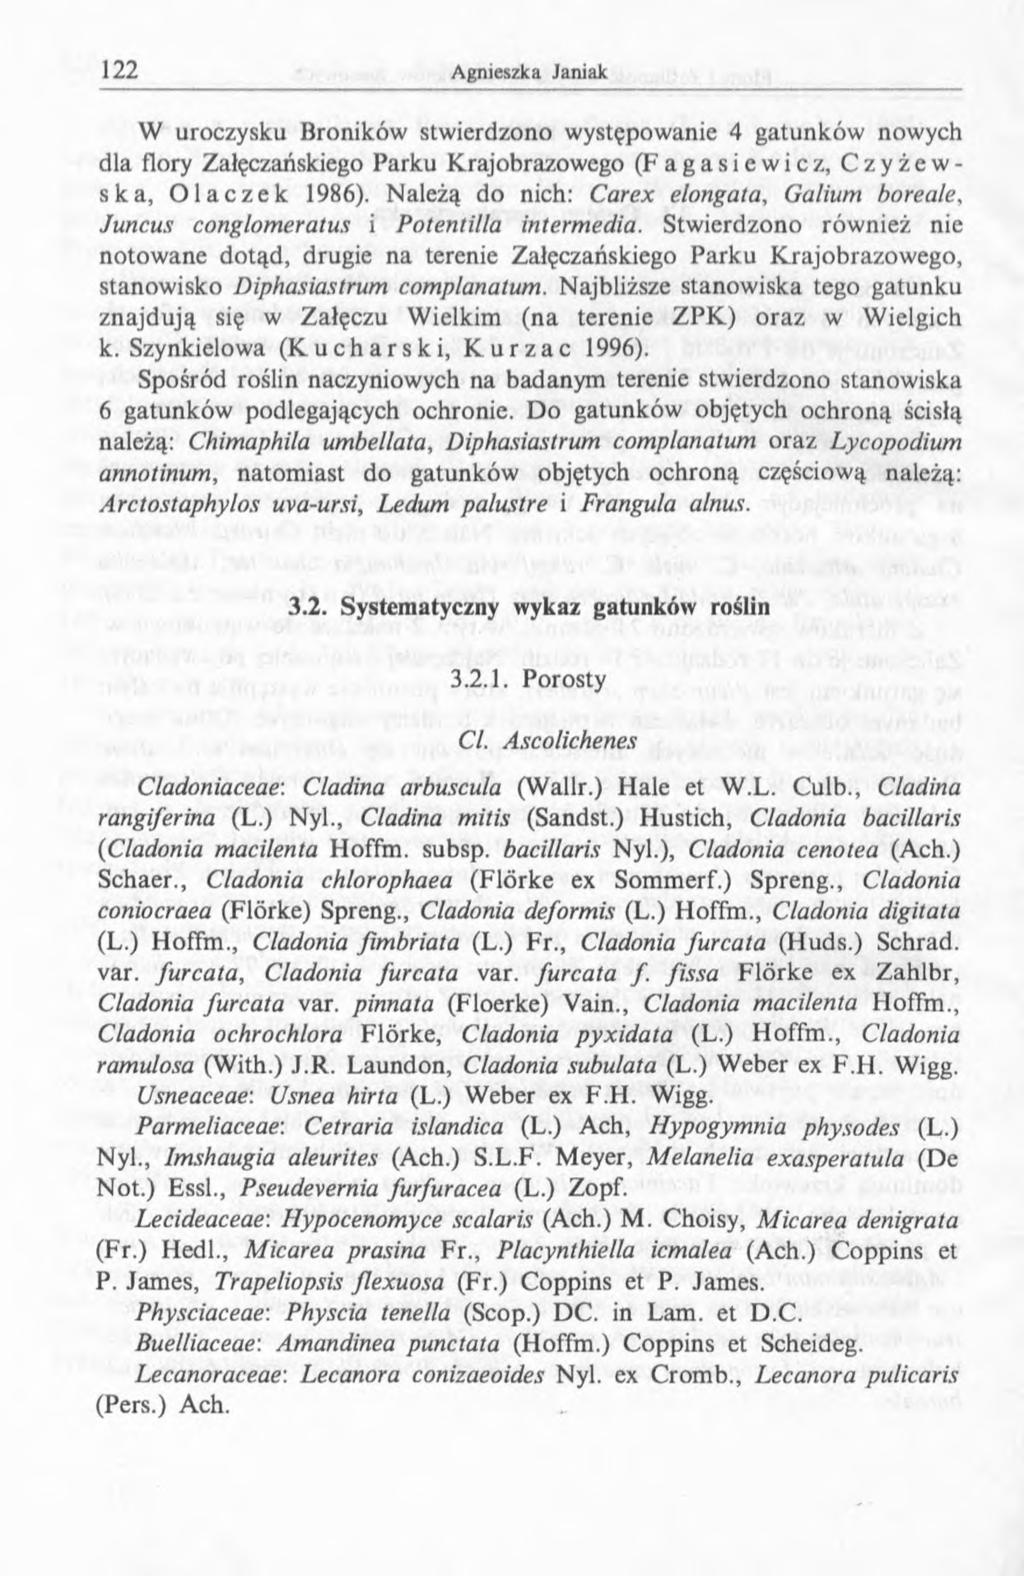 W uroczysku Broników stwierdzono występowanie 4 gatunków nowych dla flory Załęczańskiego Parku Krajobrazowego (Fagasiewicz, Czyżewska, Olaczek 1986).